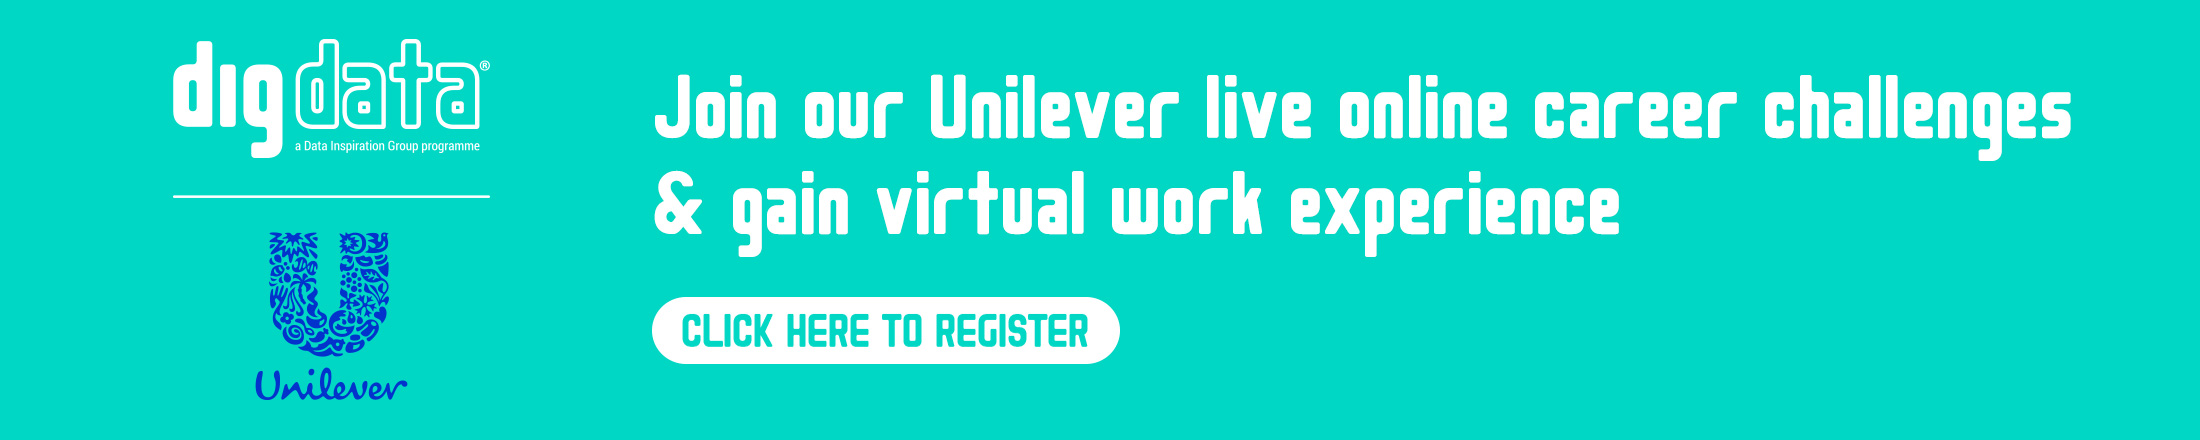 Unilever Career Challenge Register Banner